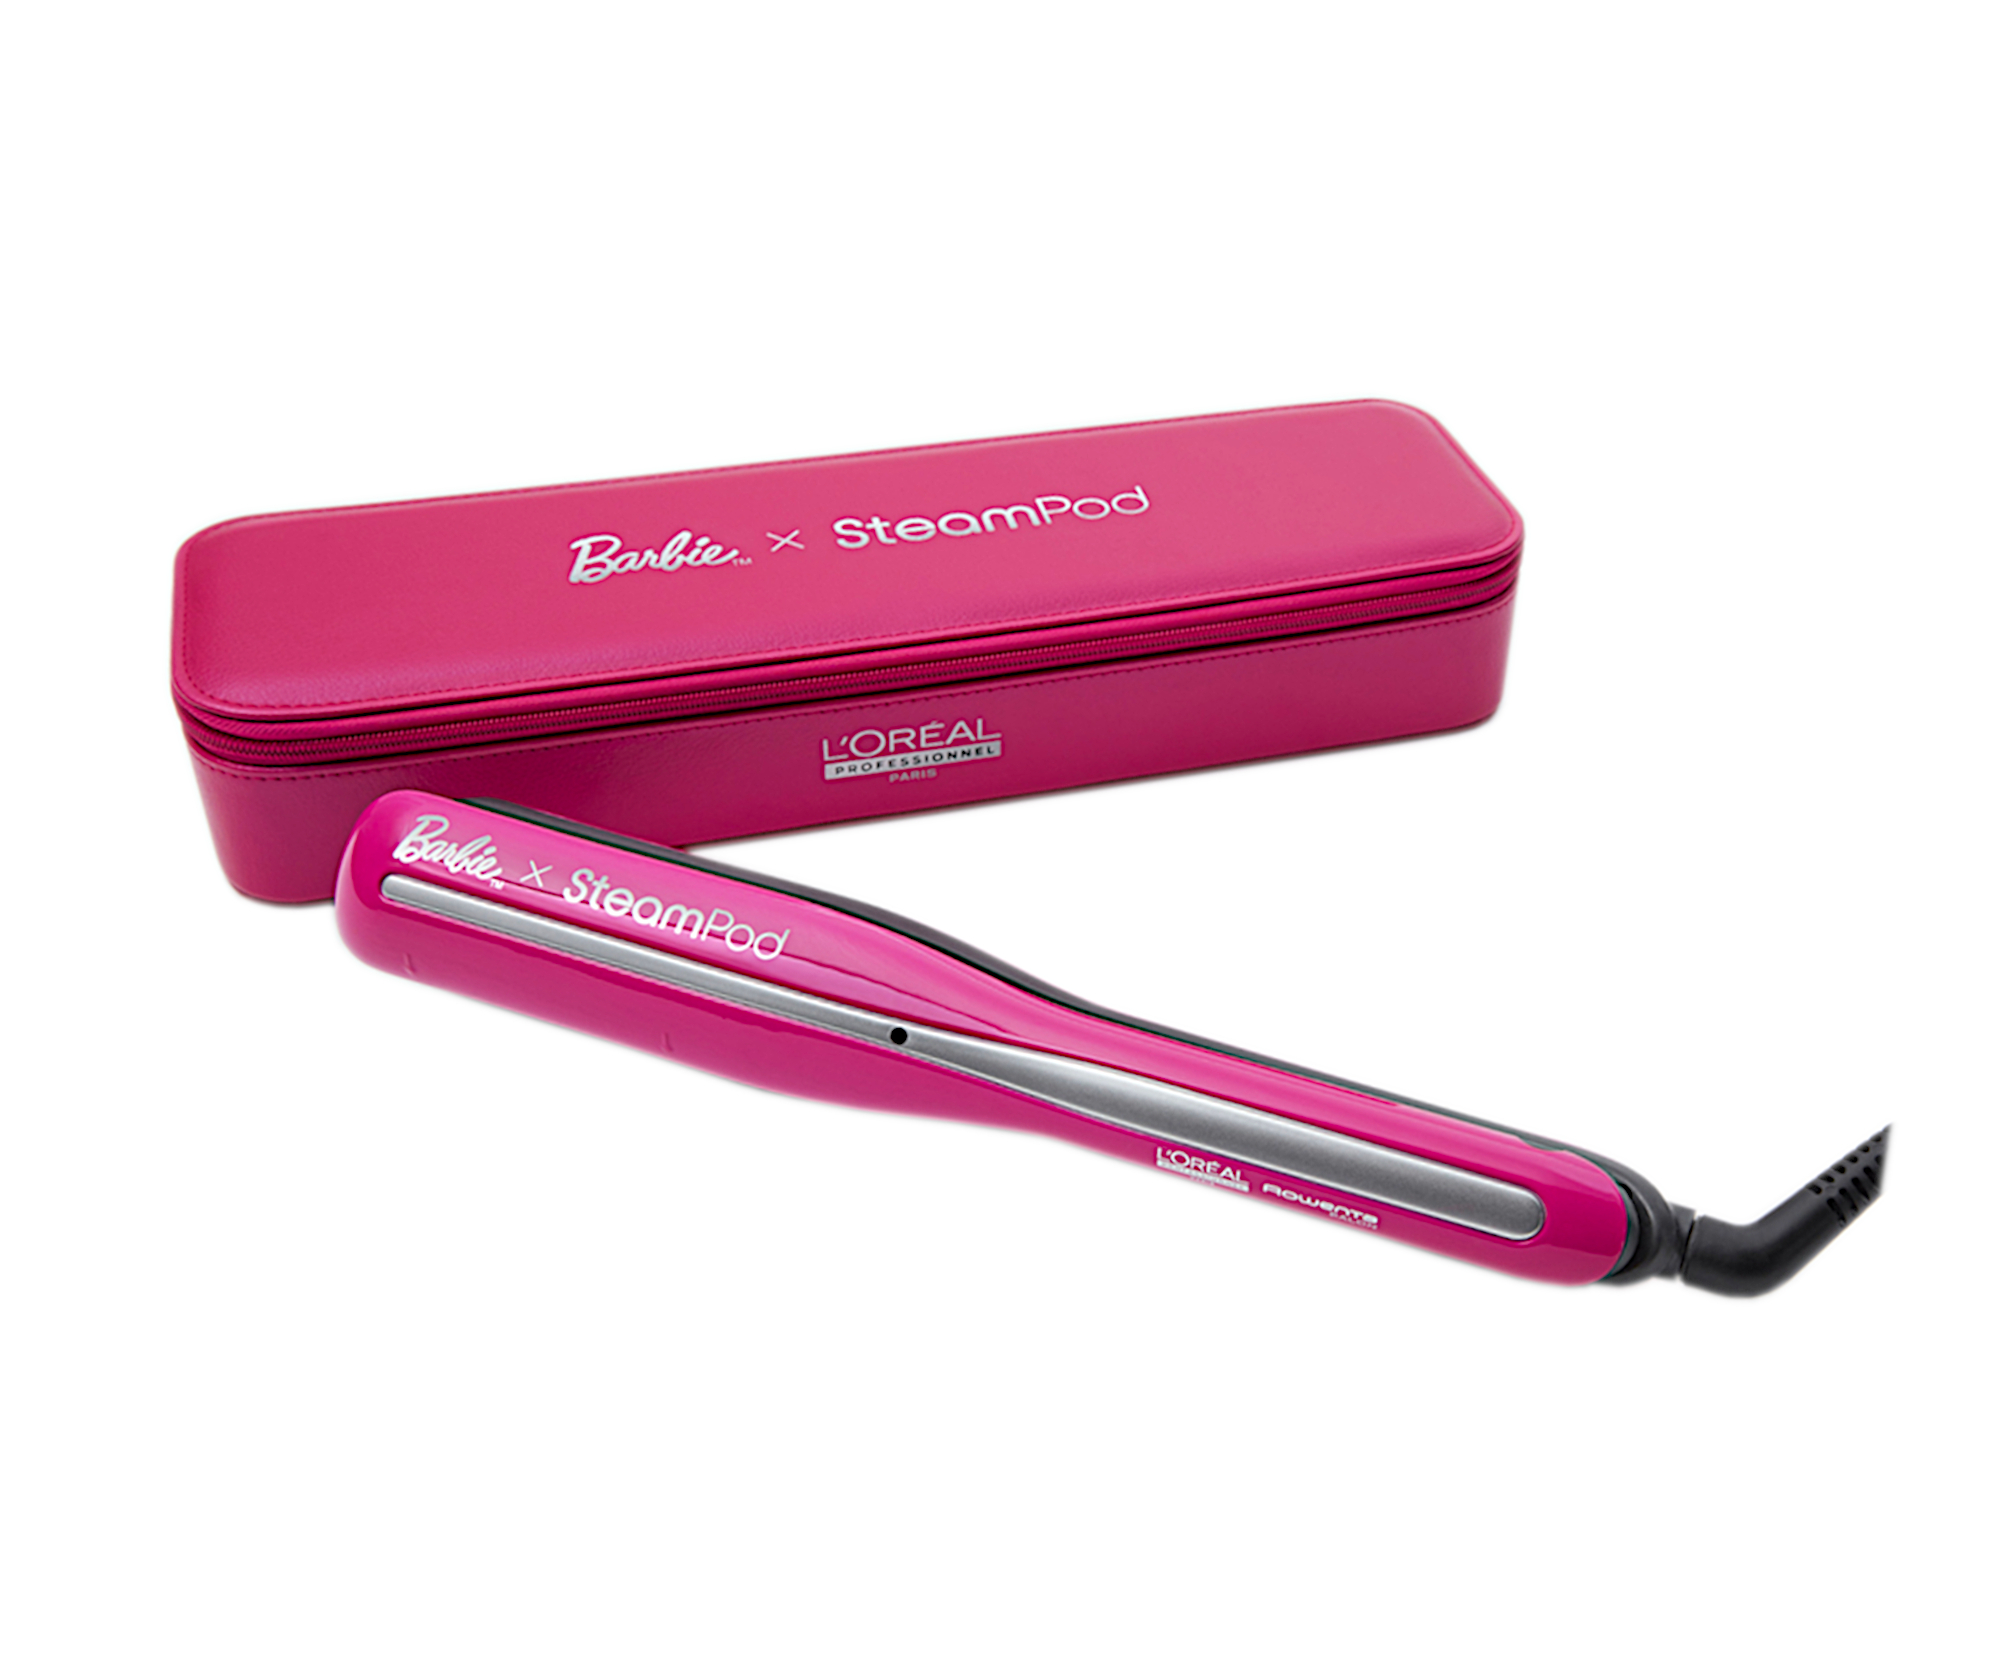 Parní žehlička na vlasy Loréal Professionnel SteamPod x Barbie - růžová + pouzdro zdarma - L’Oréal P